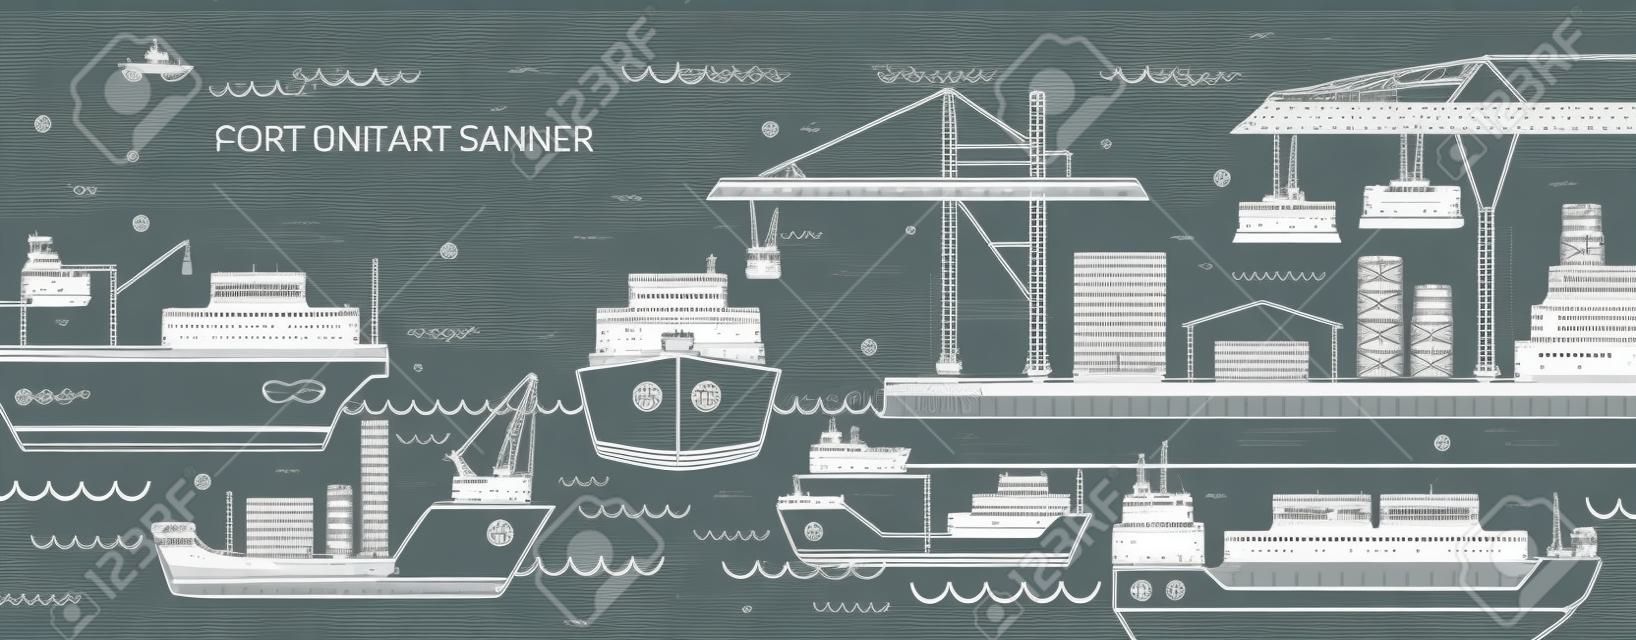 Horizontales Banner mit Seehafen, Seefrachtterminal, Frachtschiffen oder Schiffen mit Containern, die mit Höhenlinien gezeichnet sind. Seeverkehr. Monochrome Vektorillustration im linearen Stil